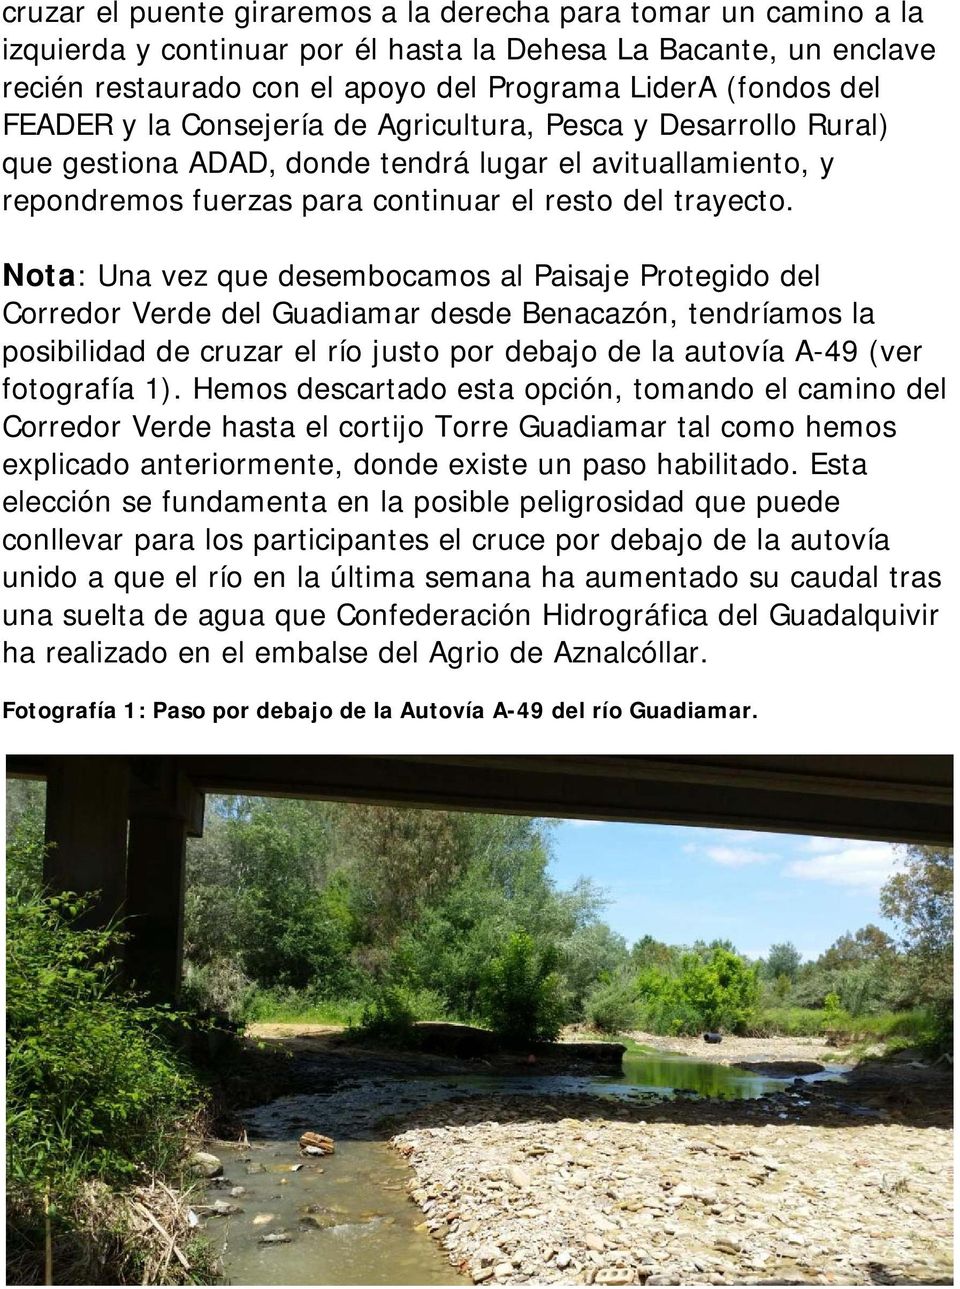 Nota: Una vez que desembocamos al Paisaje Protegido del Corredor Verde del Guadiamar desde Benacazón, tendríamos la posibilidad de cruzar el río justo por debajo de la autovía A-49 (ver fotografía 1).